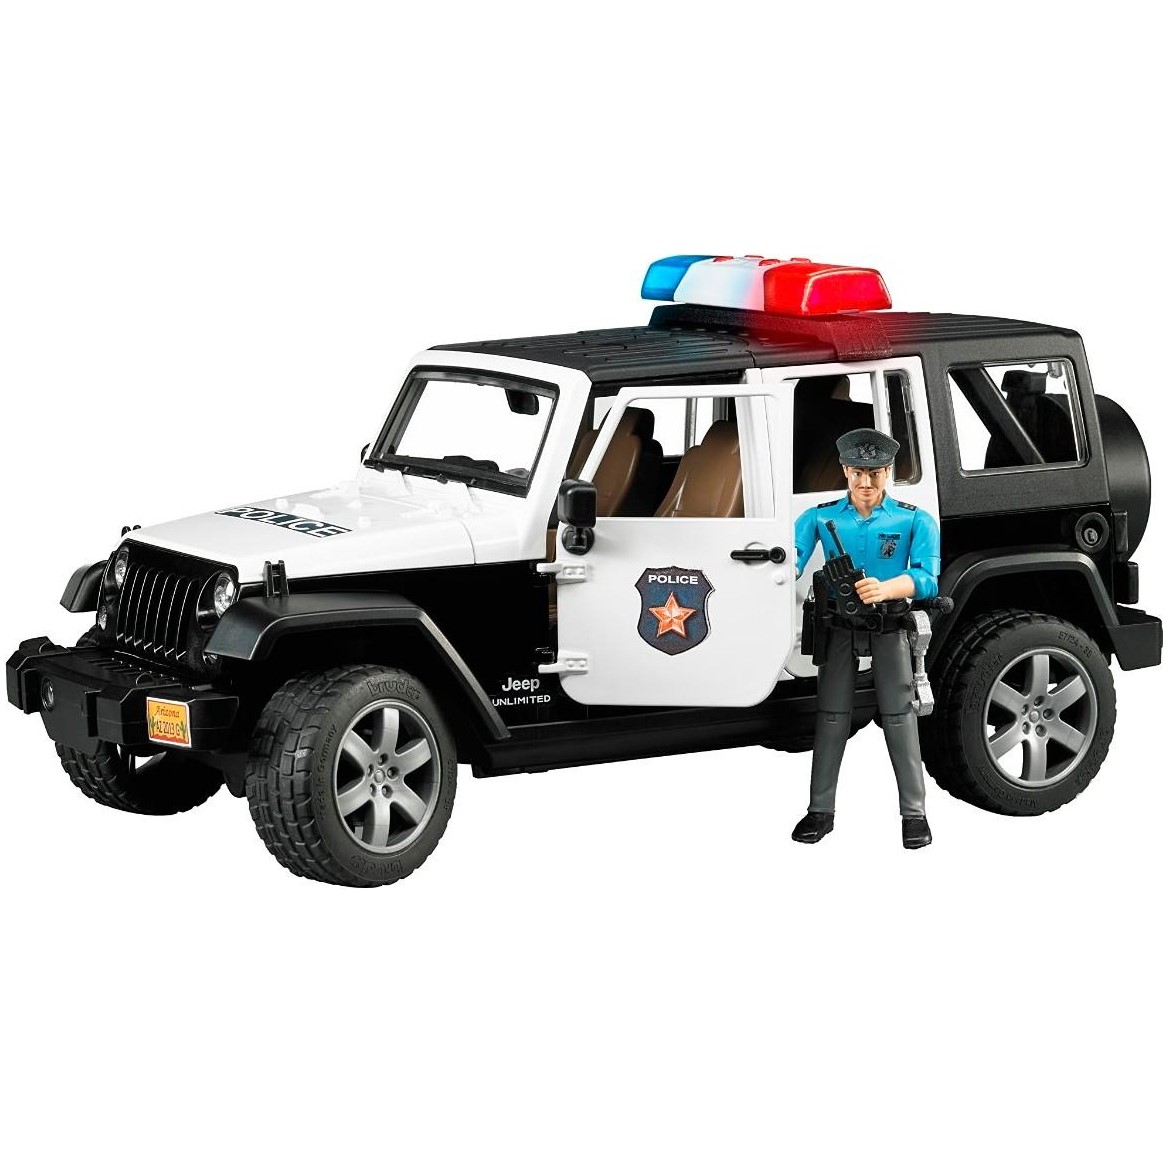 Поліцейський джип Bruder Wrangler Unlimited Rubicon із фігуркою поліцейського, 1:16 (02526) - фото 1